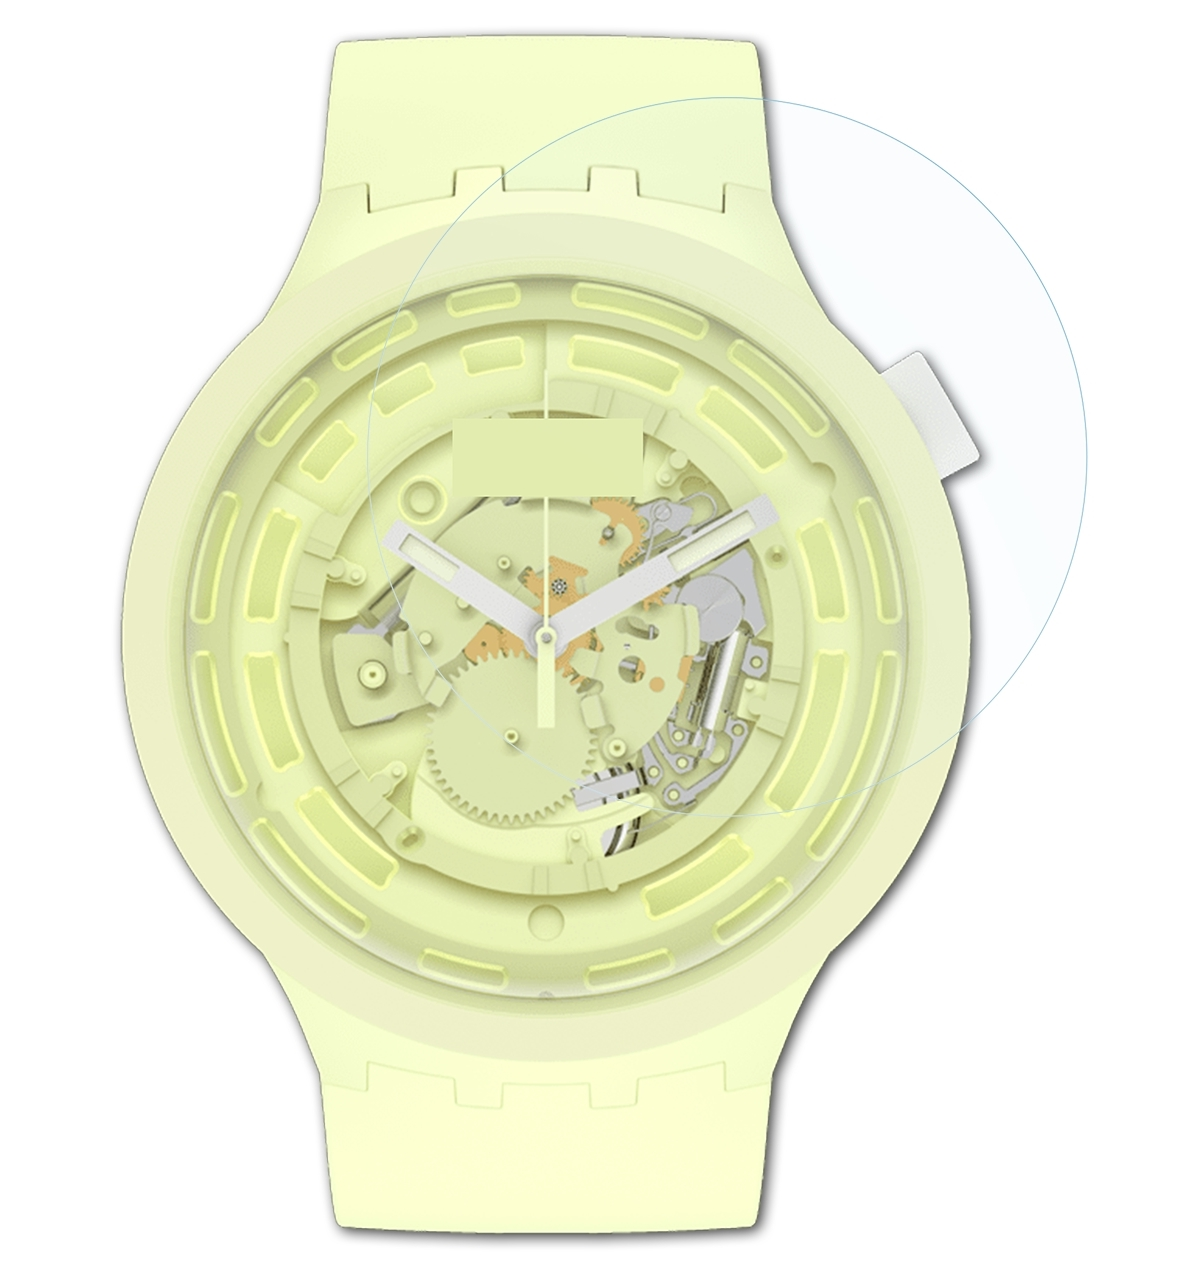 Displayschutz(für FX-Clear Swatch C-Lime) 3x ATFOLIX